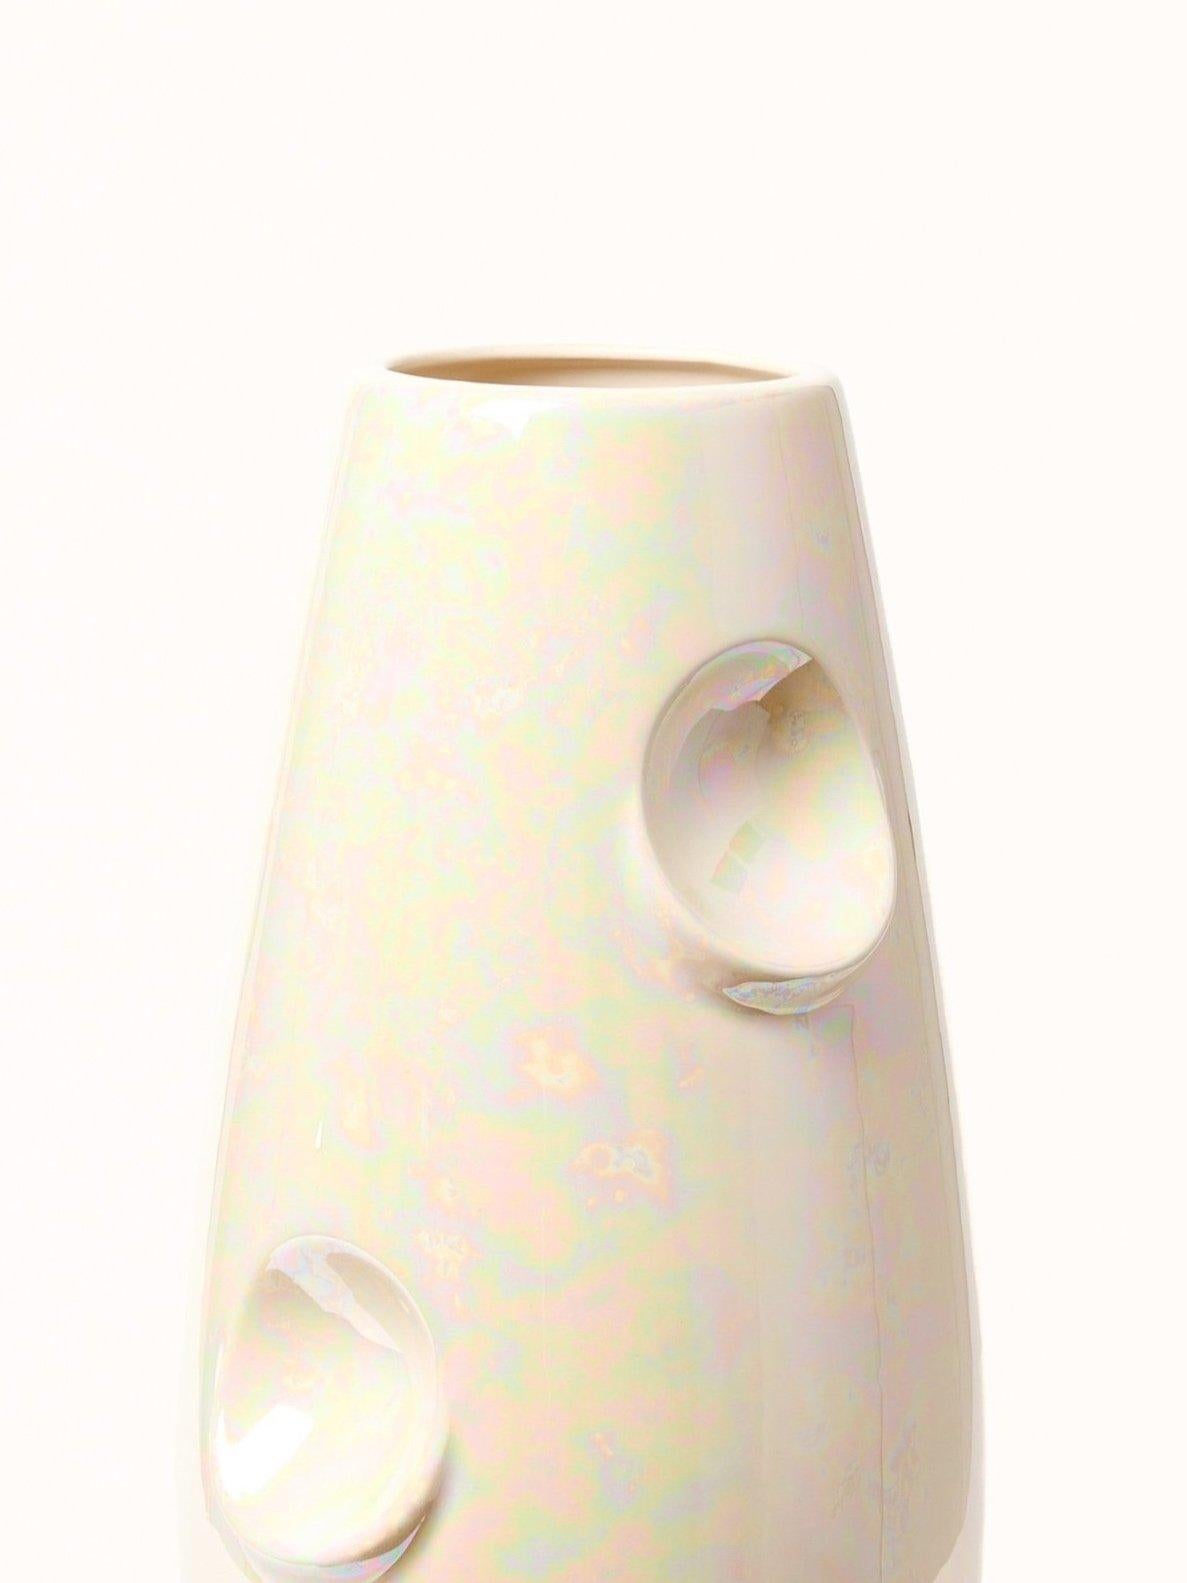 Céramique fine
Calle dite brillante / irisée
Mélange de métaux précieux
Hig. 42 cm / ø 19 cm

OKO est déjà un classique, la version la plus connue du vase appartenant à la famille OKO. OKO HOLO est une combinaison de notre forme préférée avec